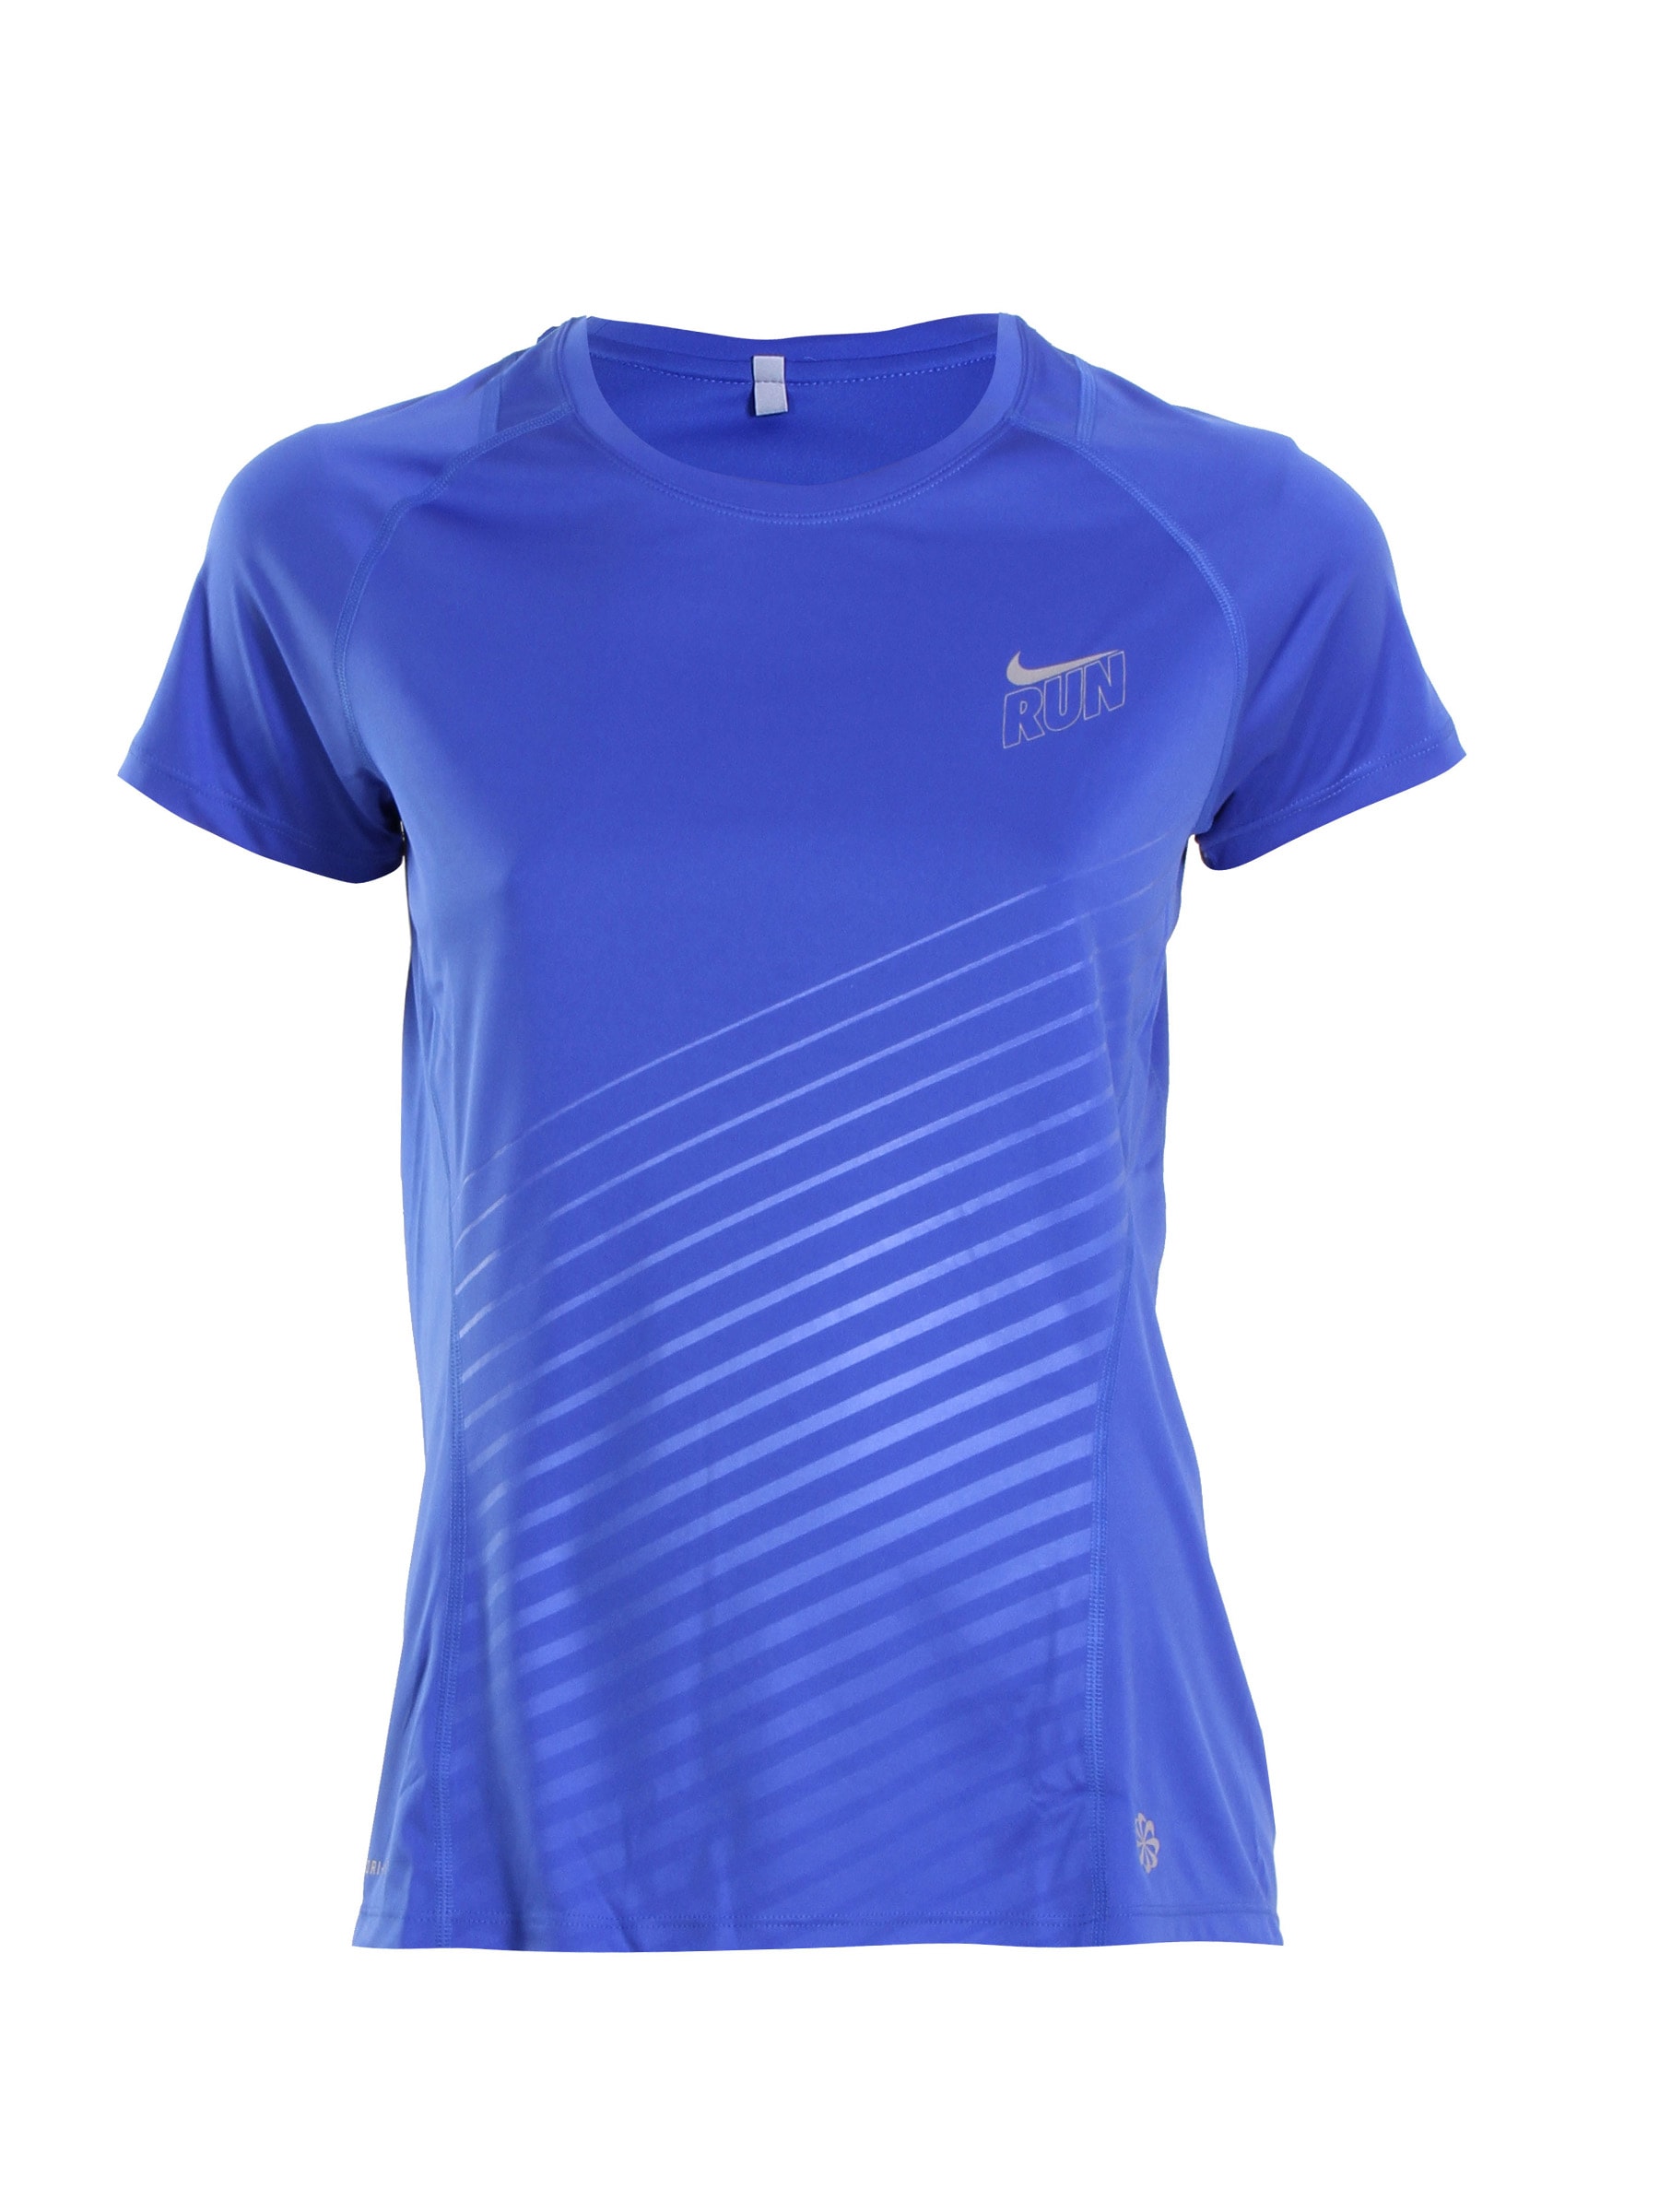 Nike Women Blue T-shirt